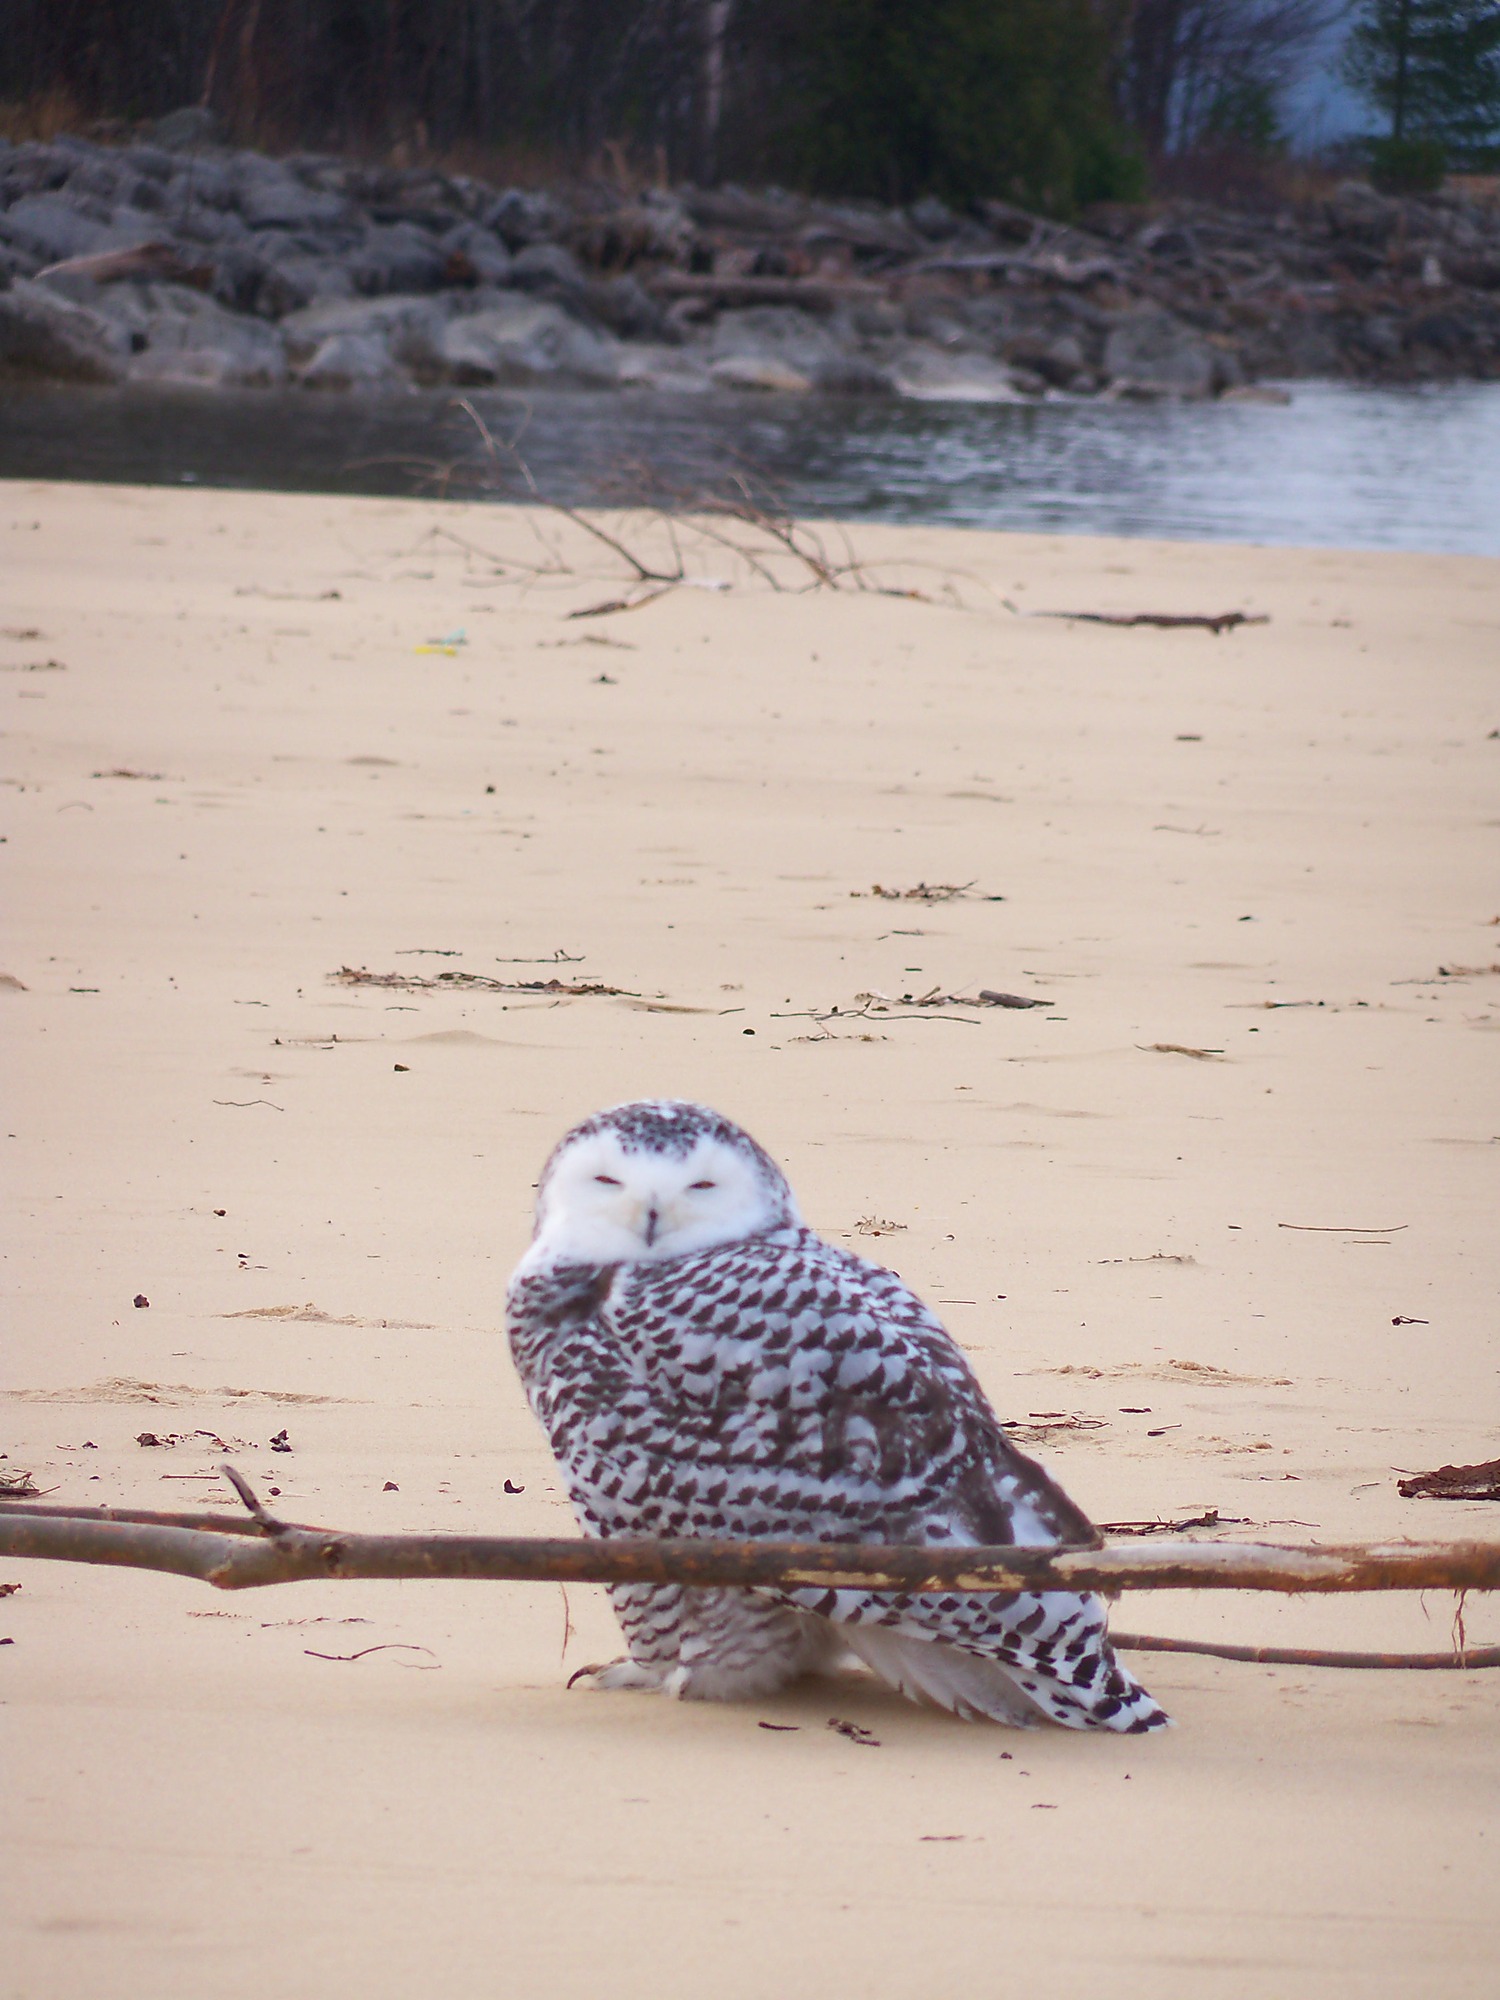 Snowy owl on the beach